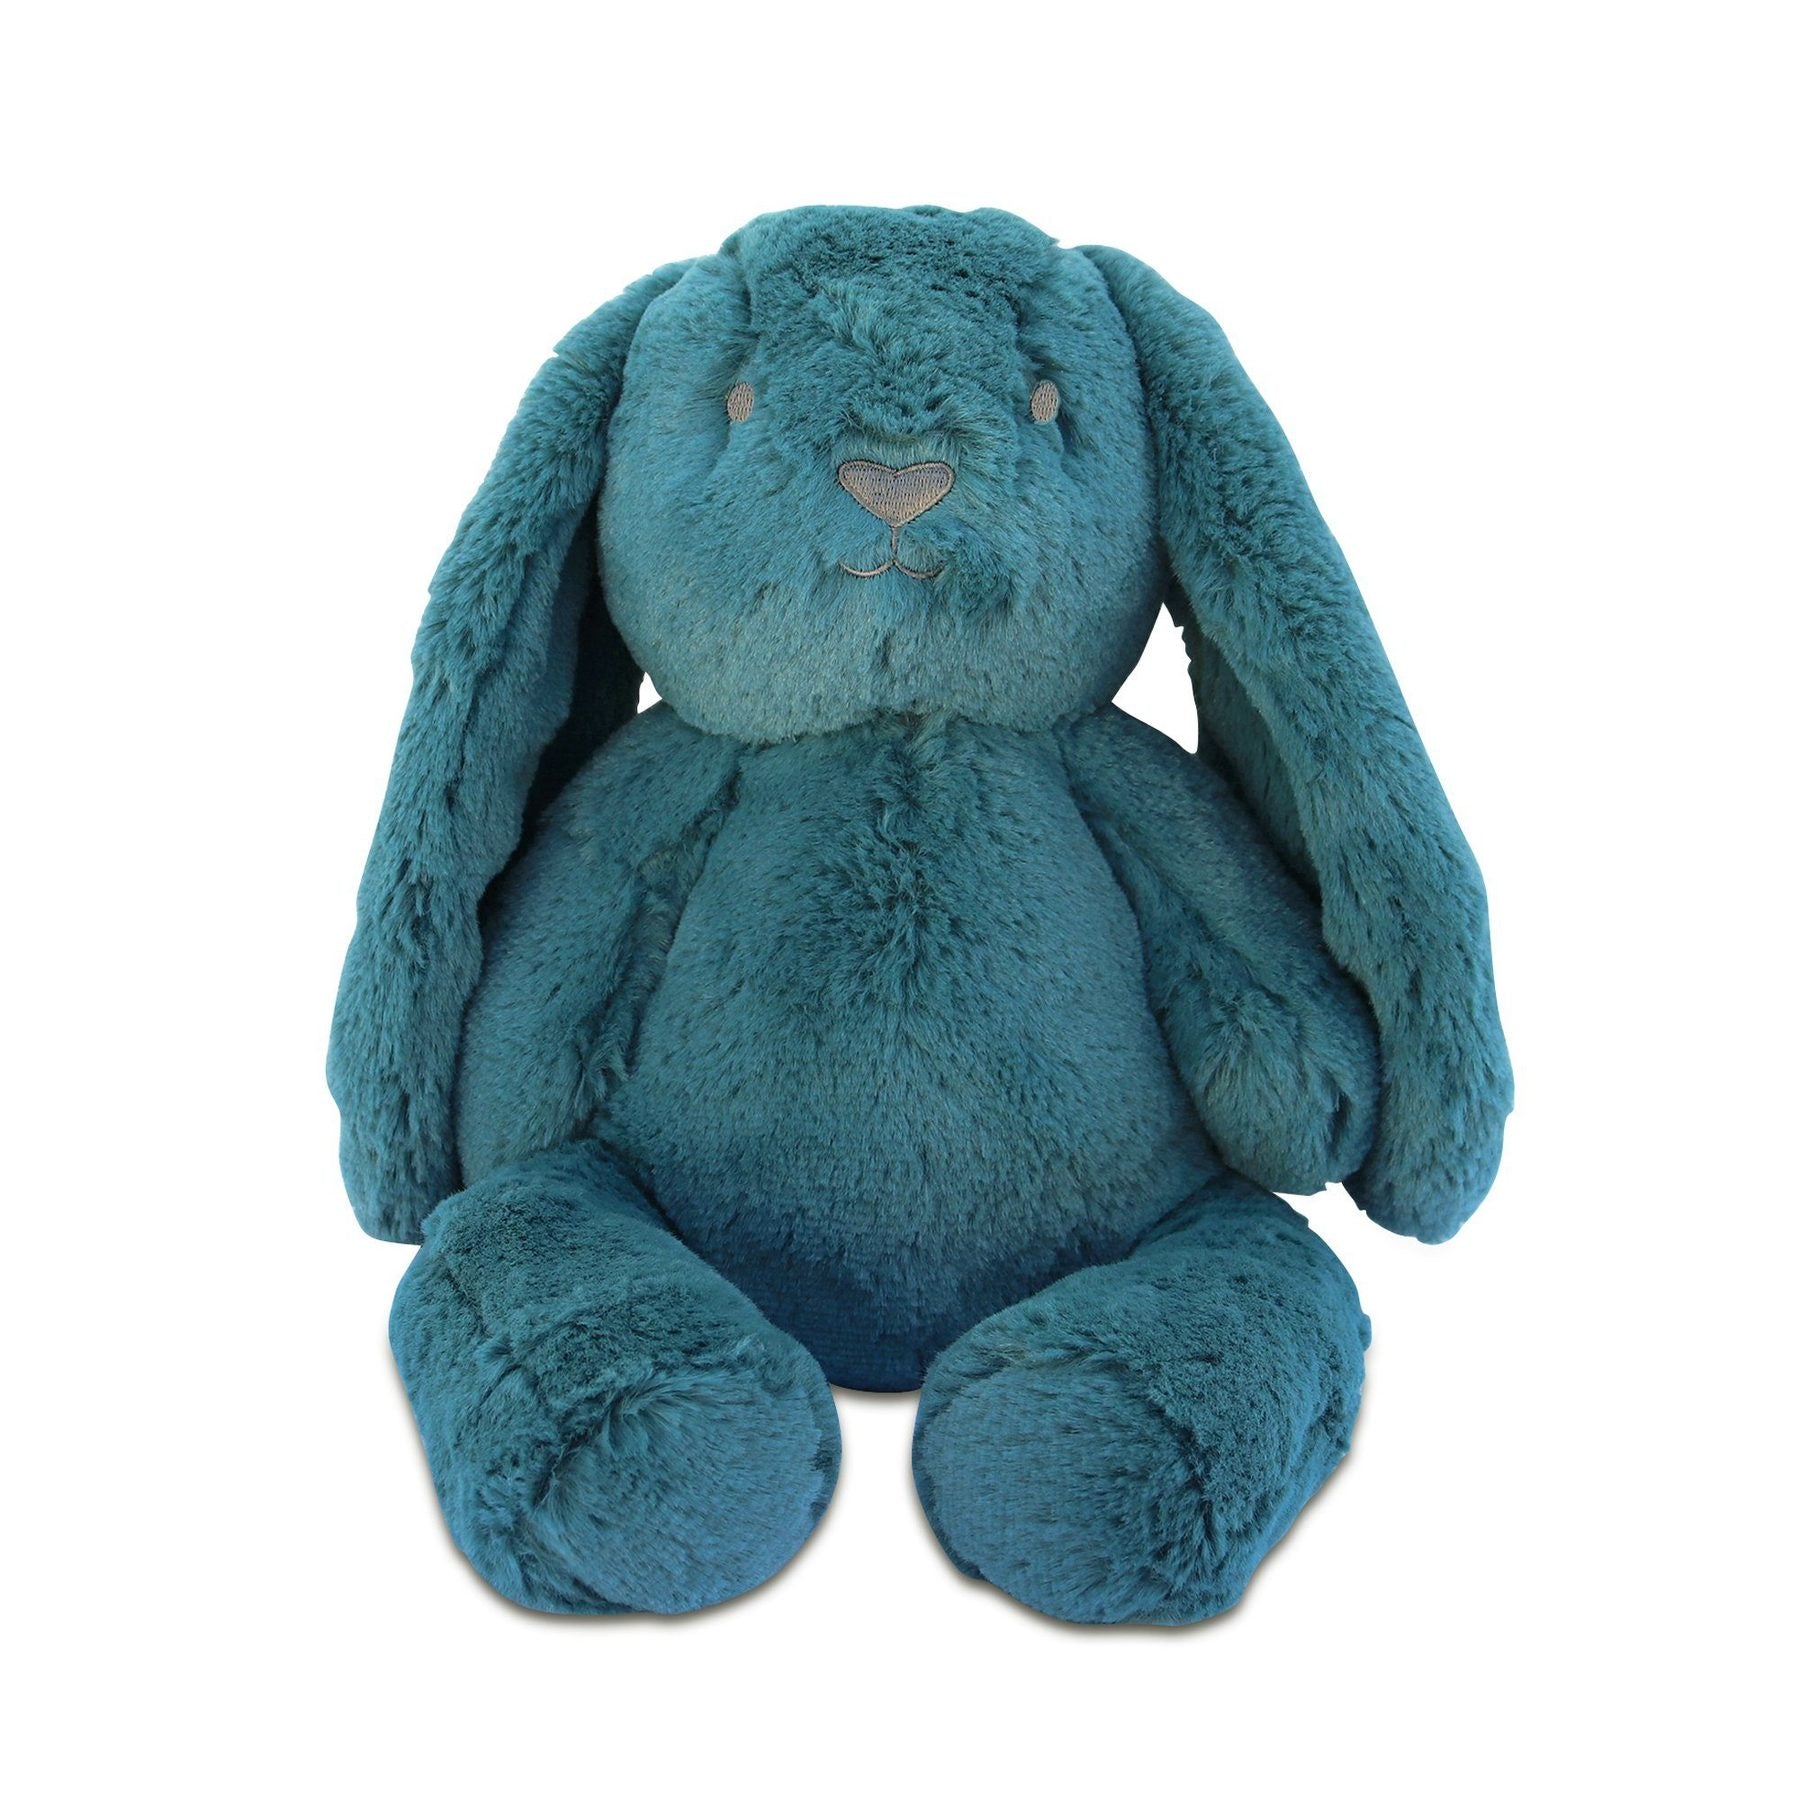 OB Design - Banjo Bunny Huggie Teal Blue Plush Toy